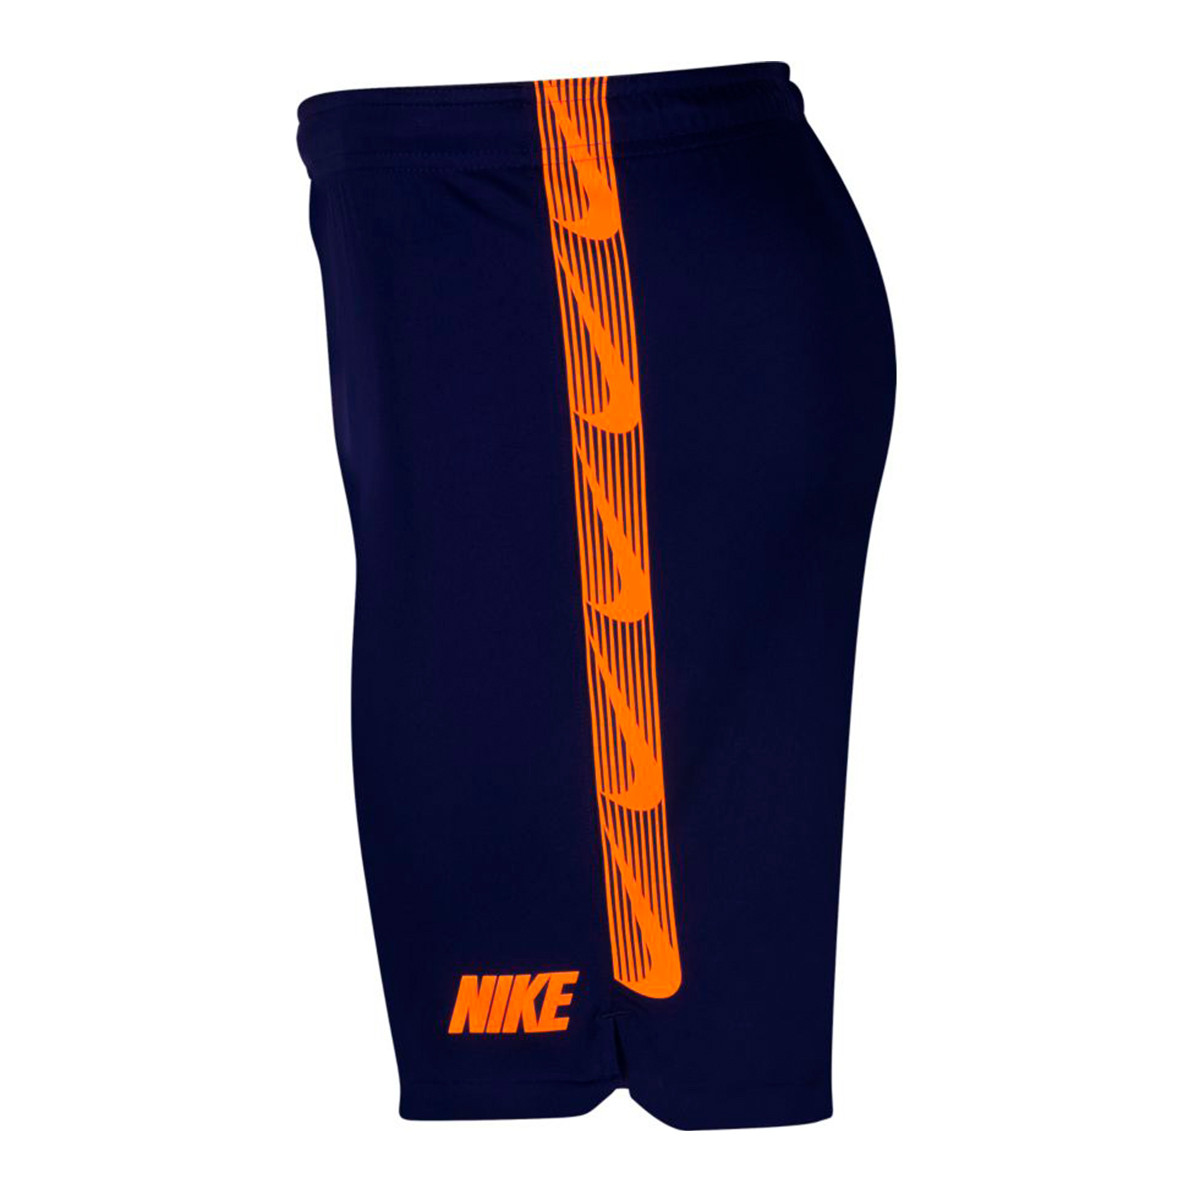 nike blue and orange shorts